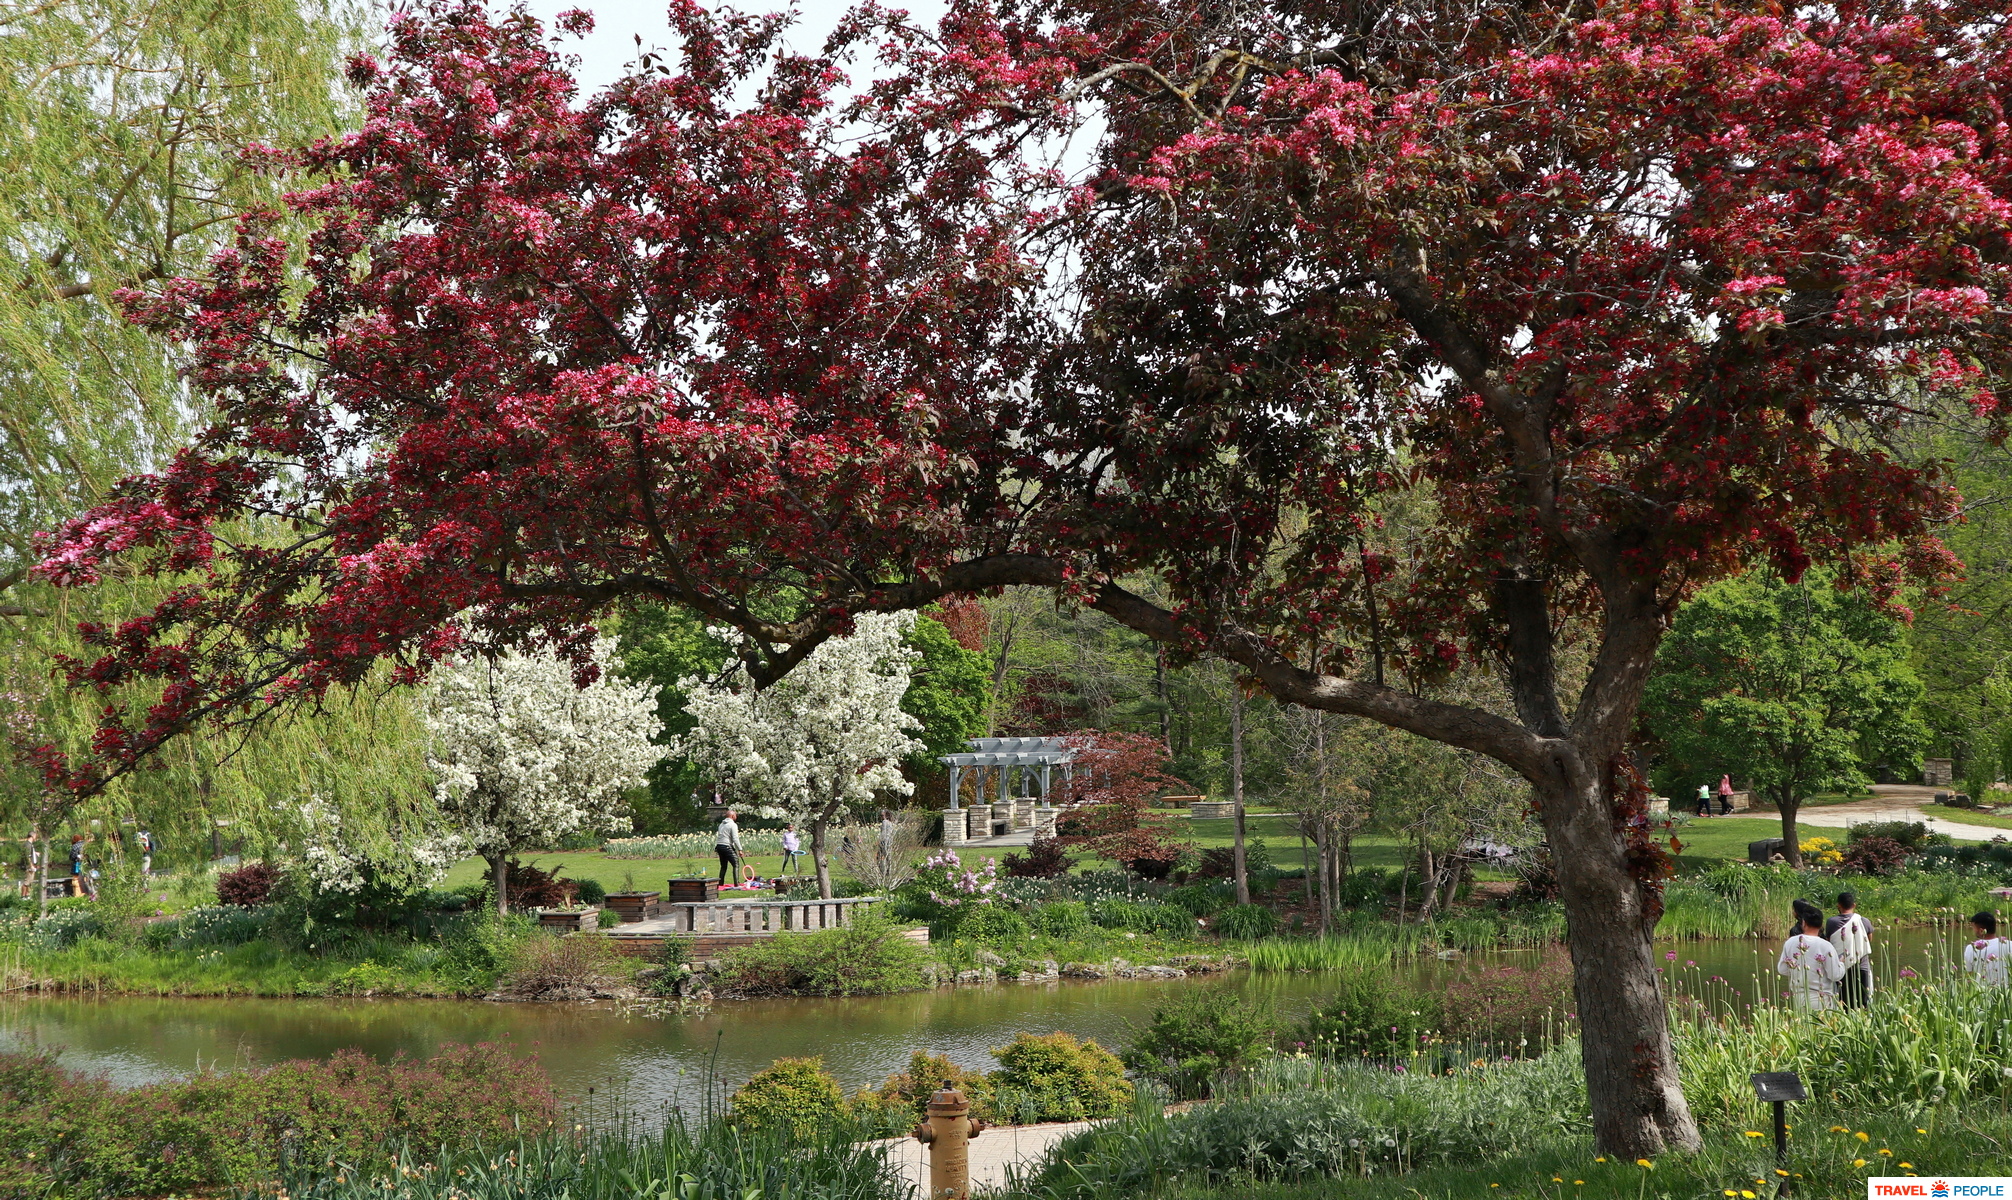 Humber Arboretum